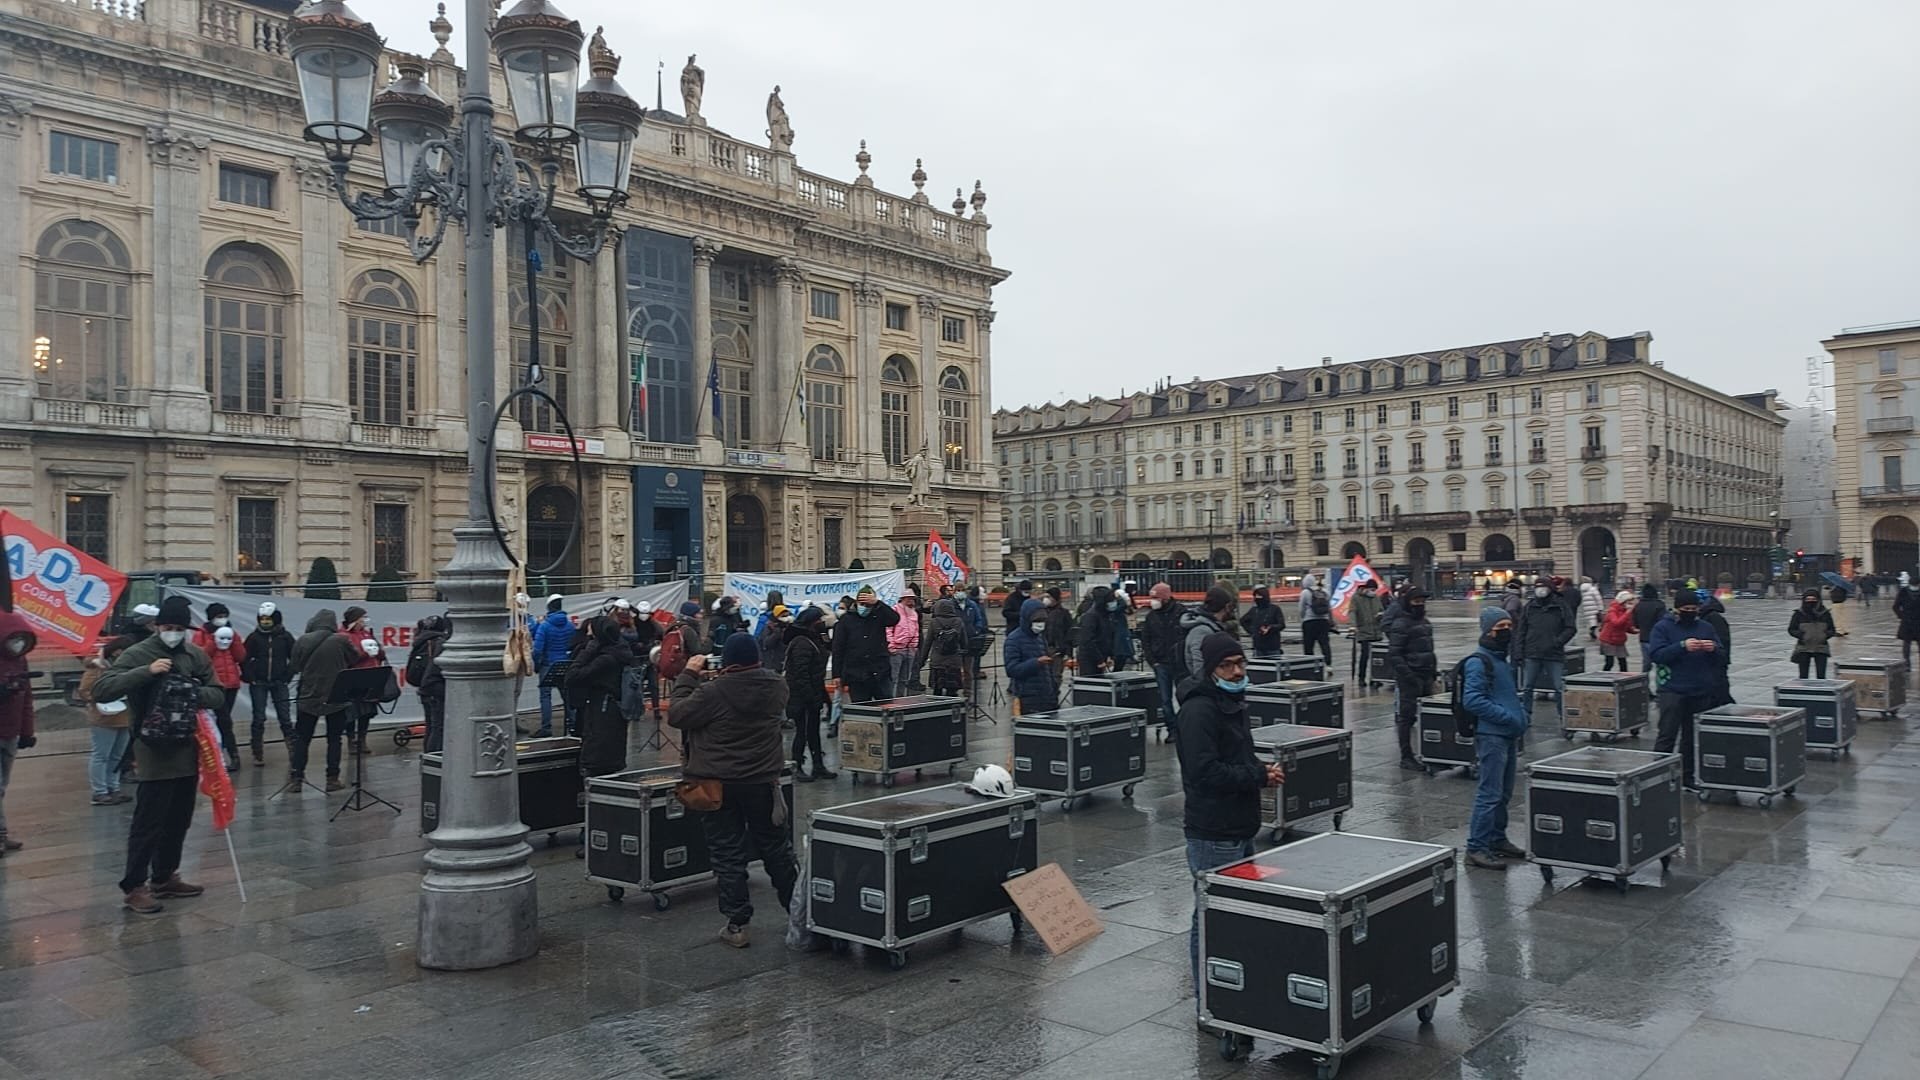 Lavoratori dello spettacolo in piazza a Torino: “Non siamo tutelati, servono riforme radicali”